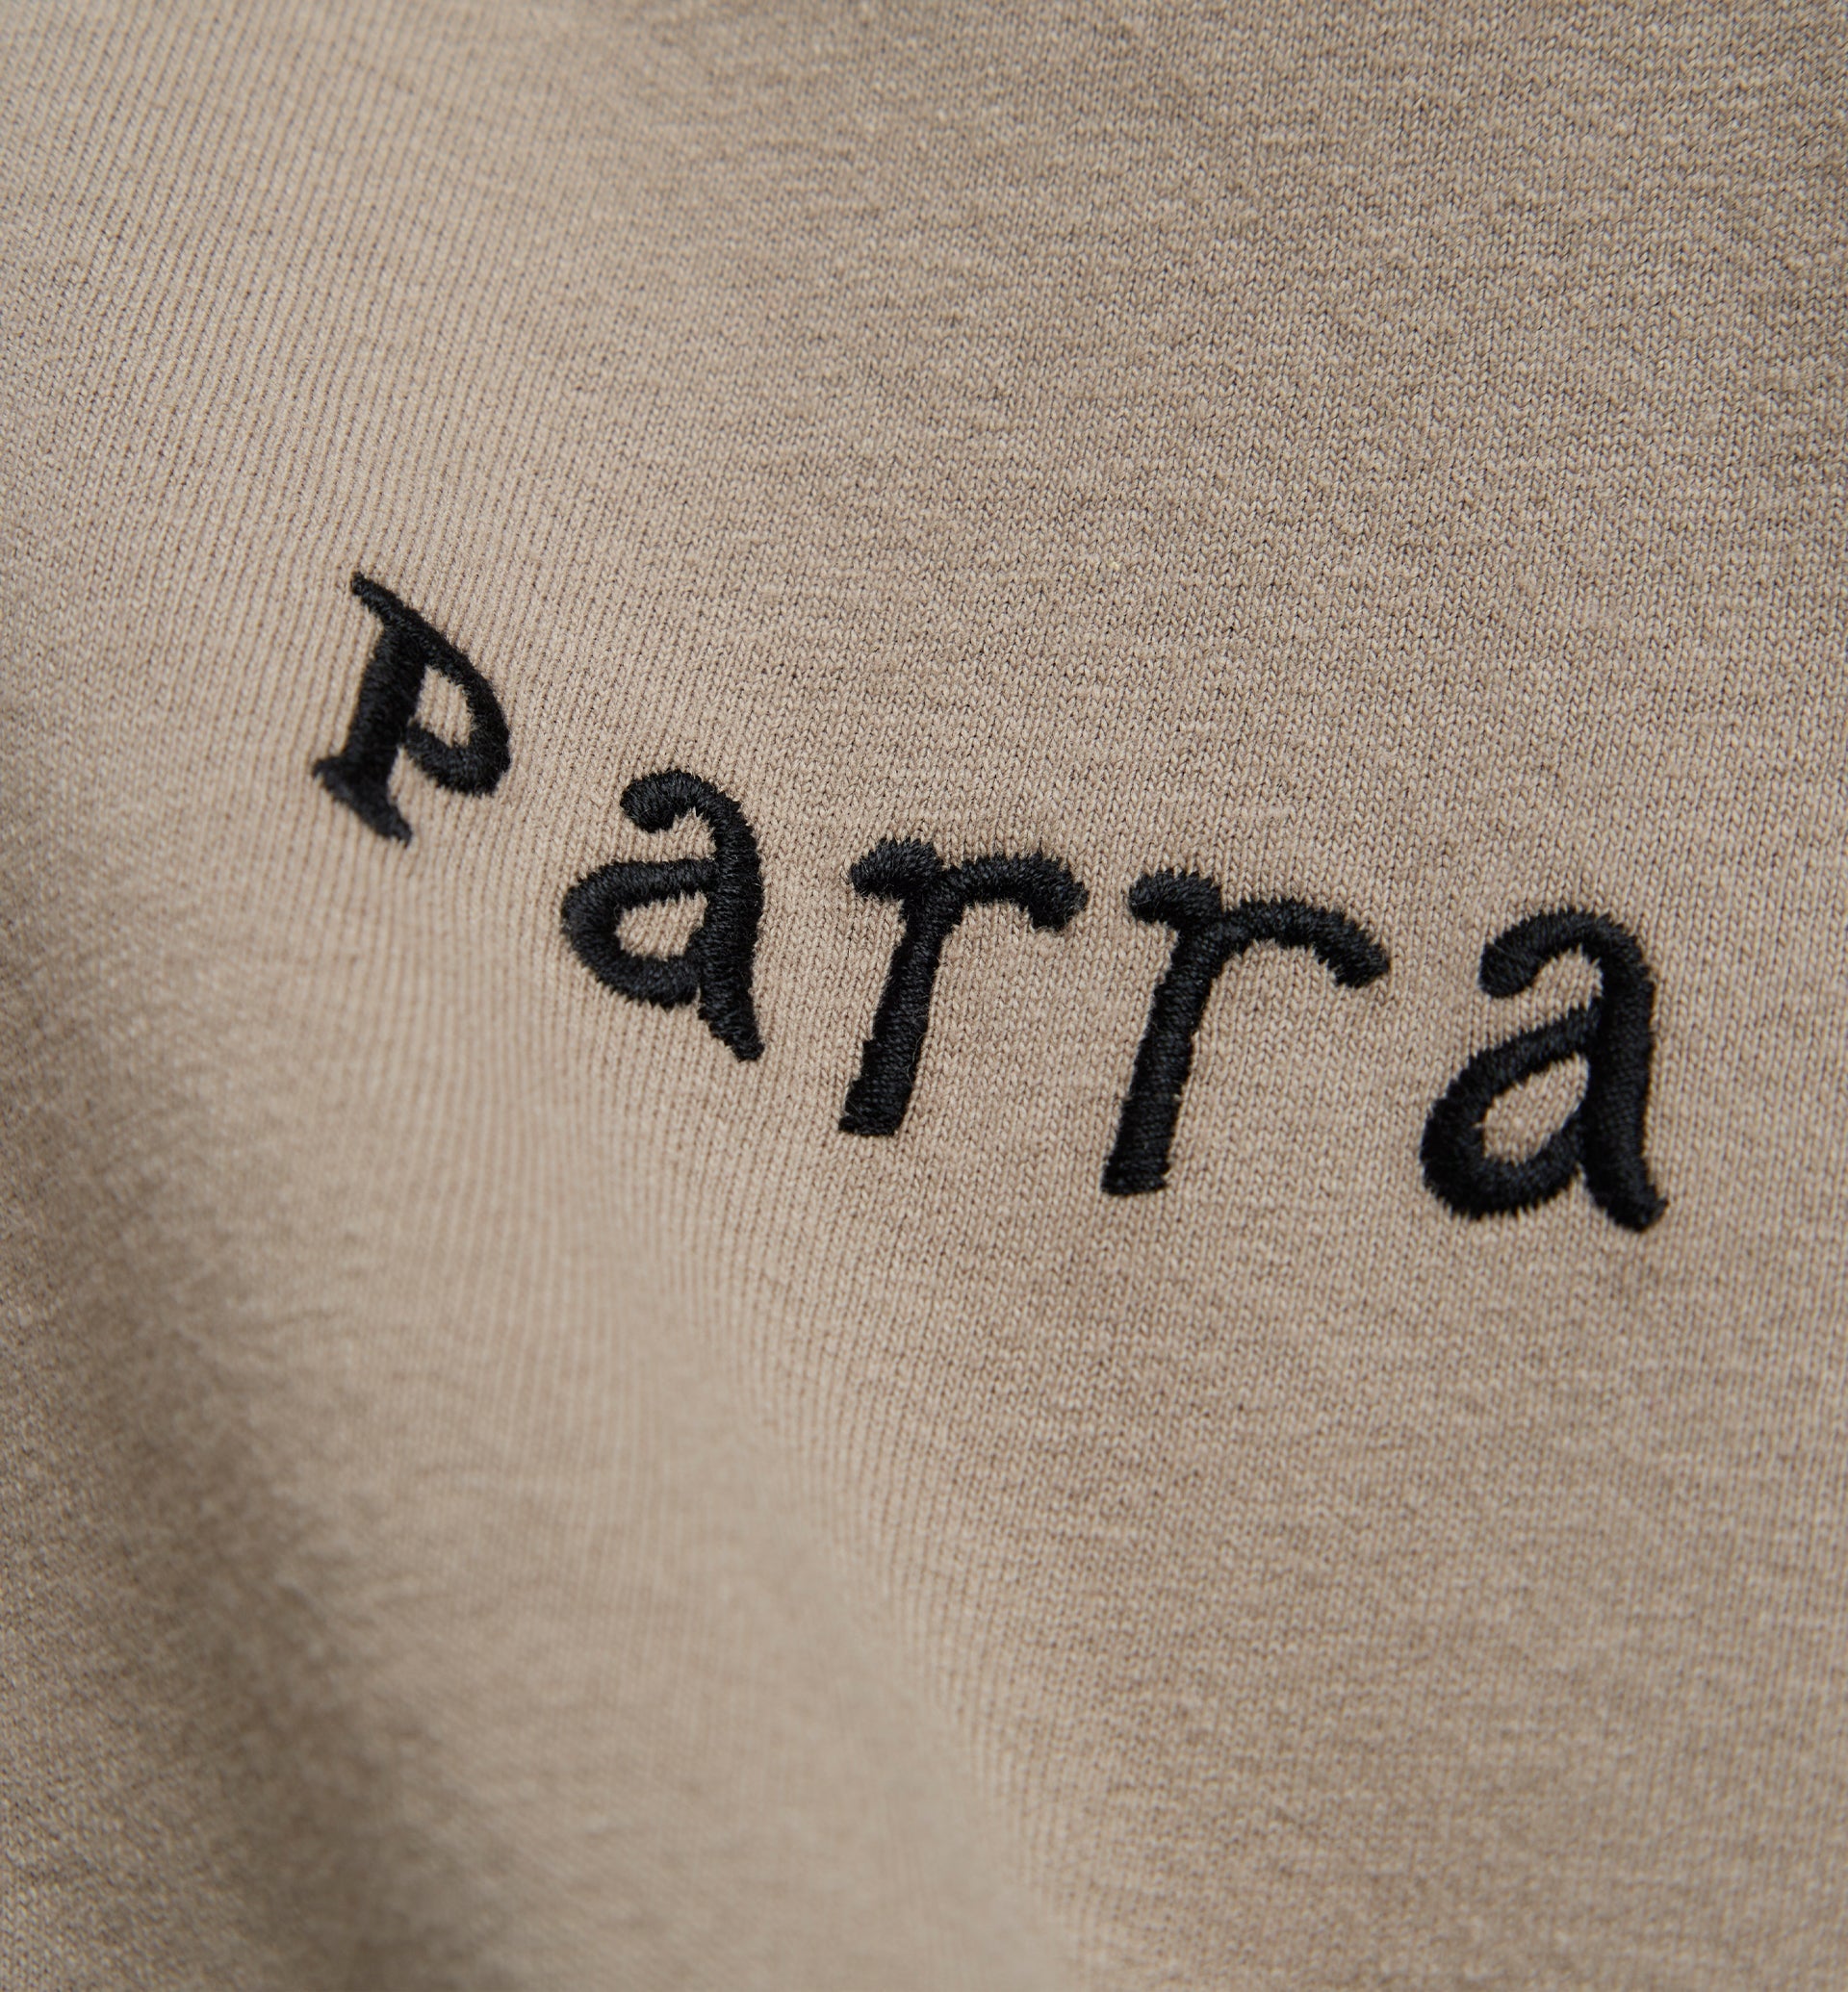 Parra - spirits of the beach t-shirt